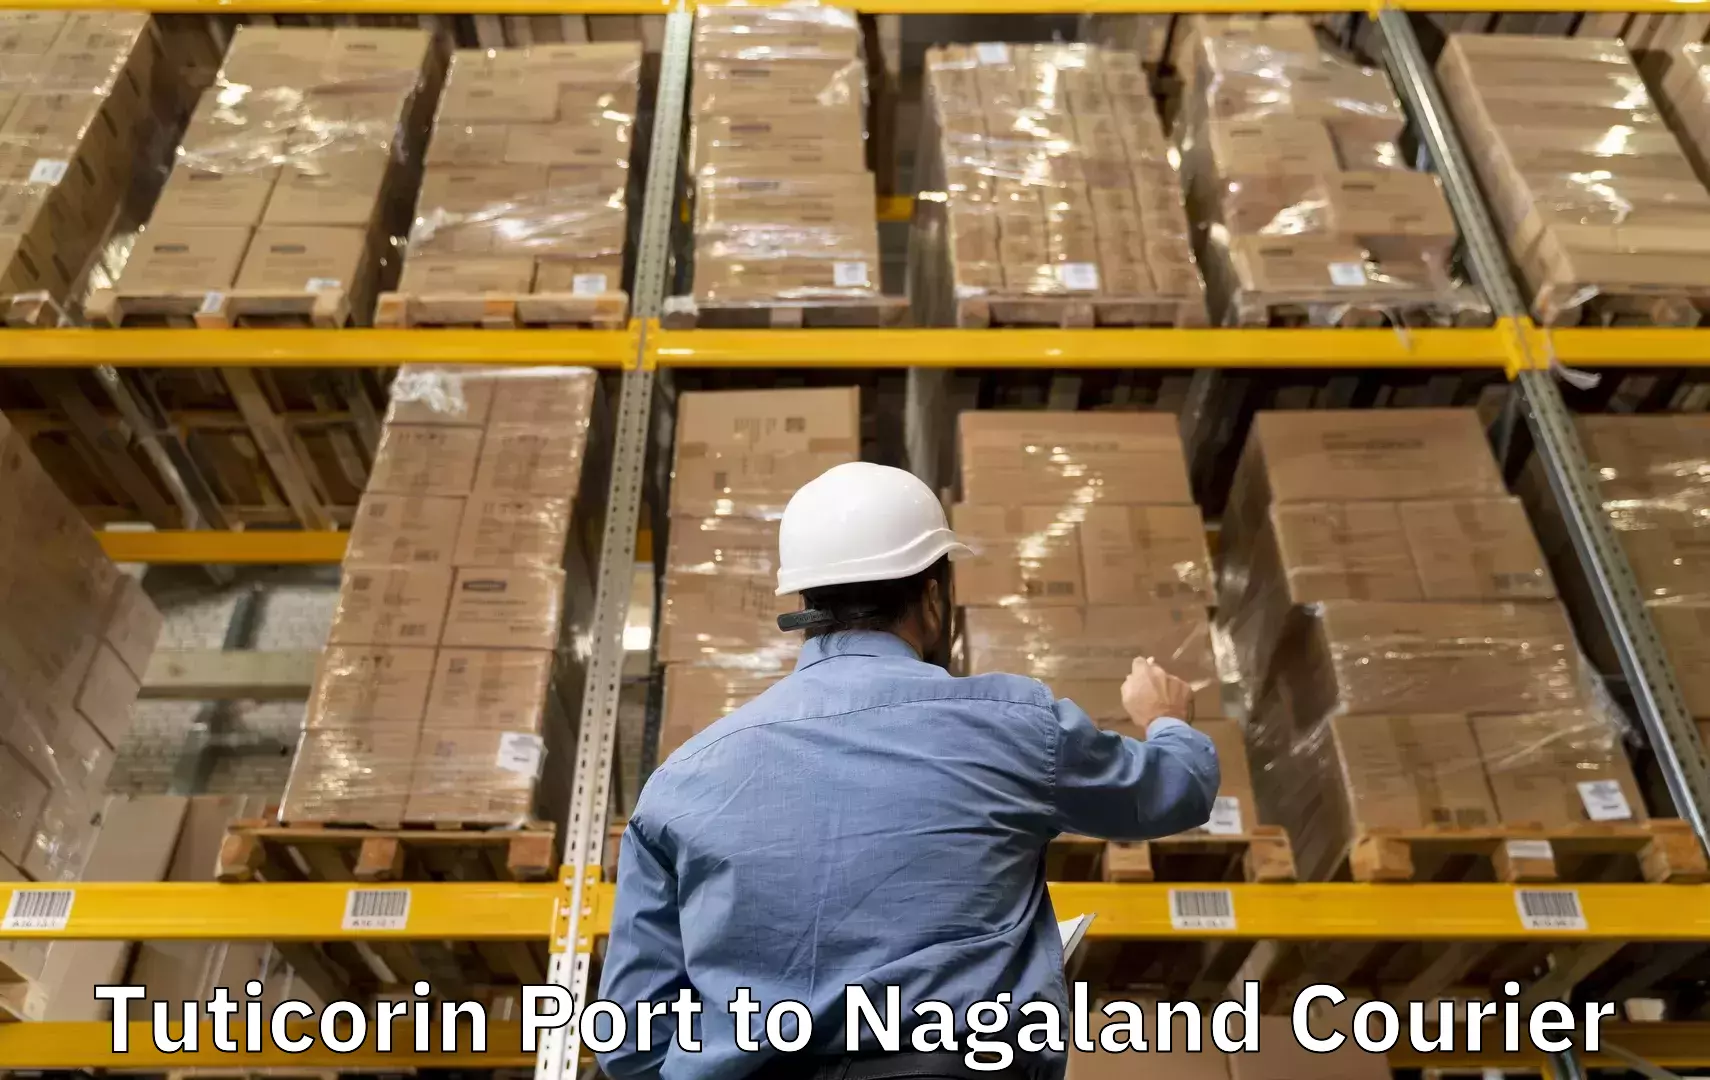 Luggage delivery providers Tuticorin Port to Mon